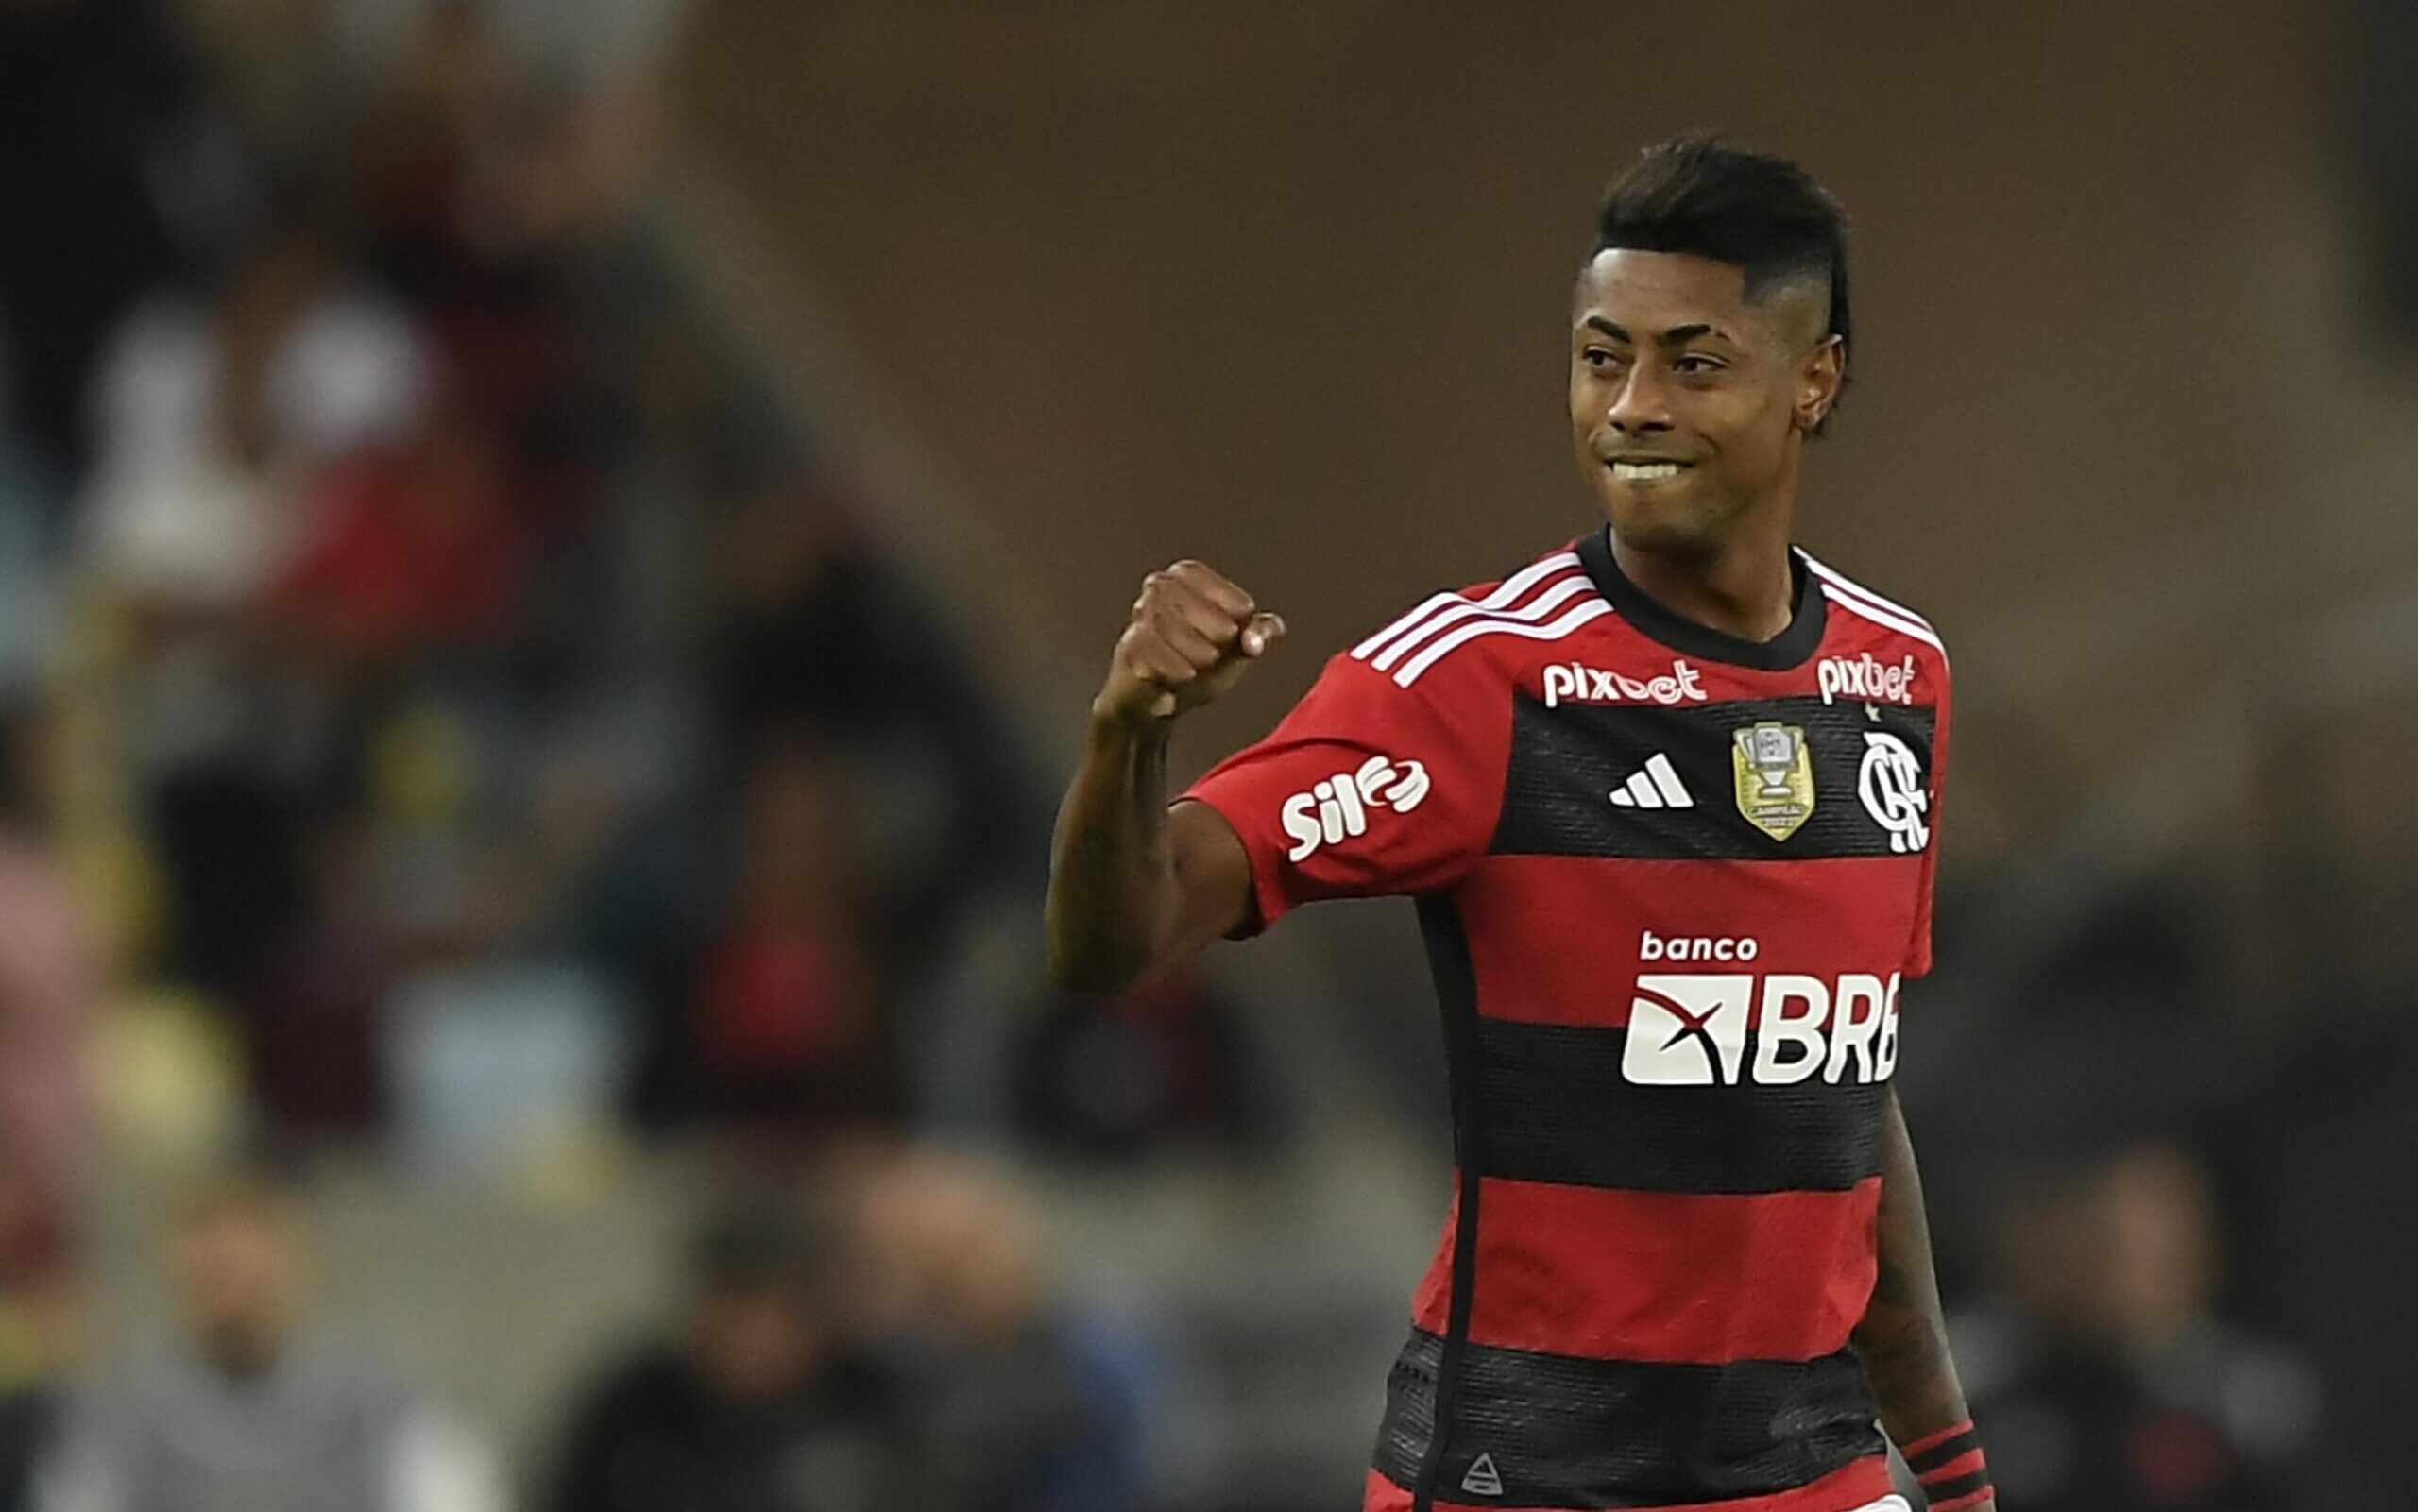 Flamengo supera retranca, vence o Olimpia e garante vantagem por